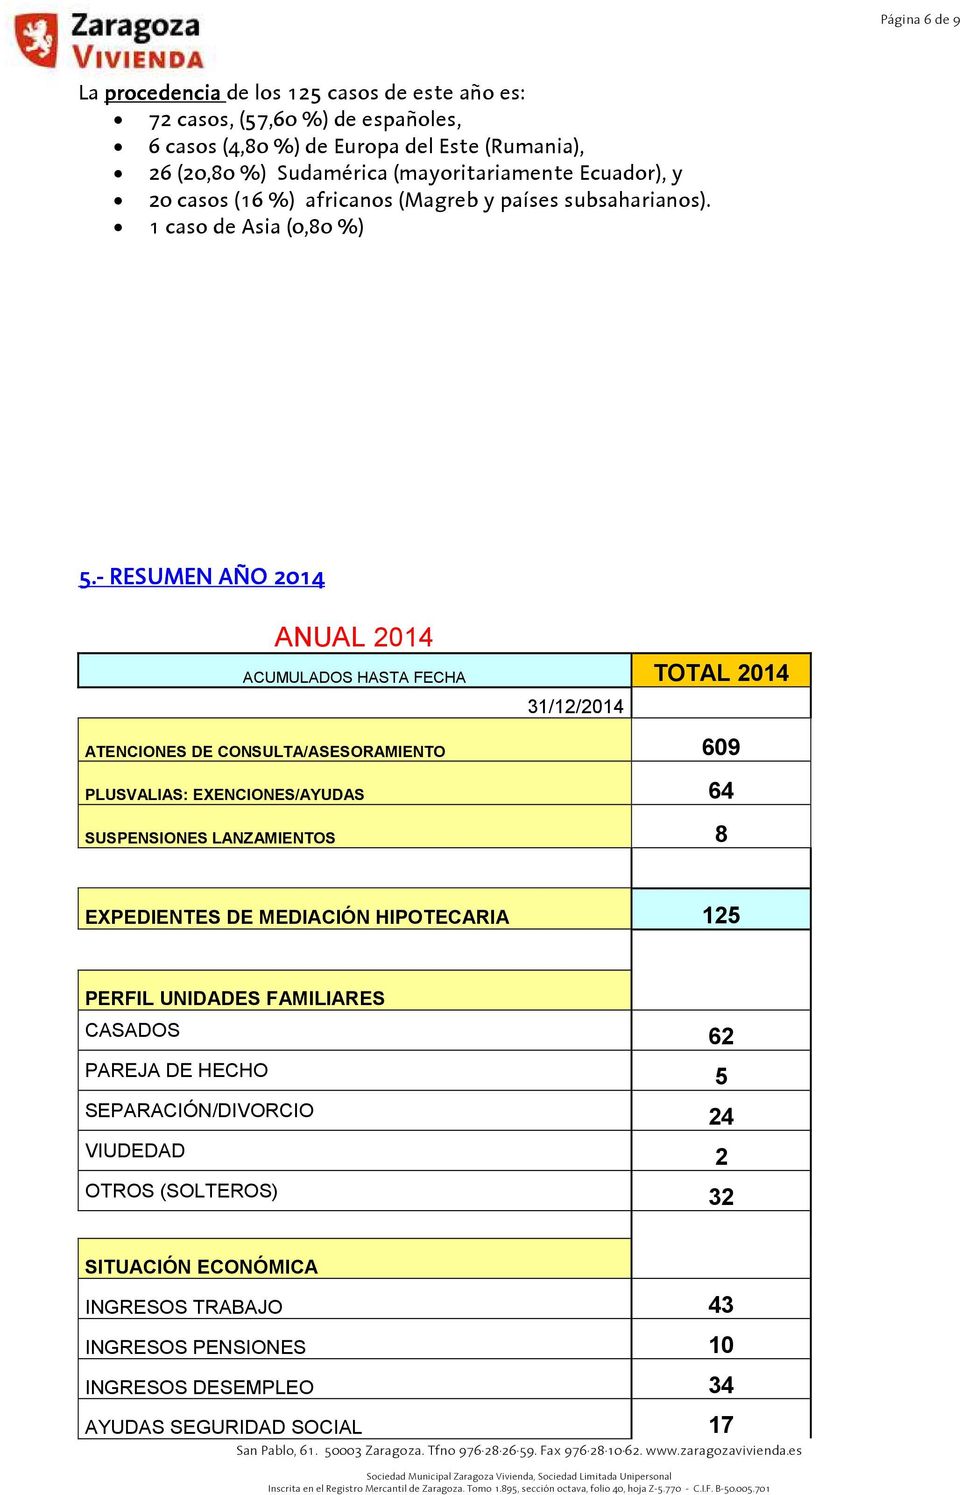 - RESUMEN AÑO 2014 ANUAL 2014 ACUMULADOS HASTA FECHA TOTAL 2014 31/12/2014 ATENCIONES DE CONSULTA/ASESORAMIENTO 609 PLUSVALIAS: EXENCIONES/AYUDAS 64 SUSPENSIONES LANZAMIENTOS 8